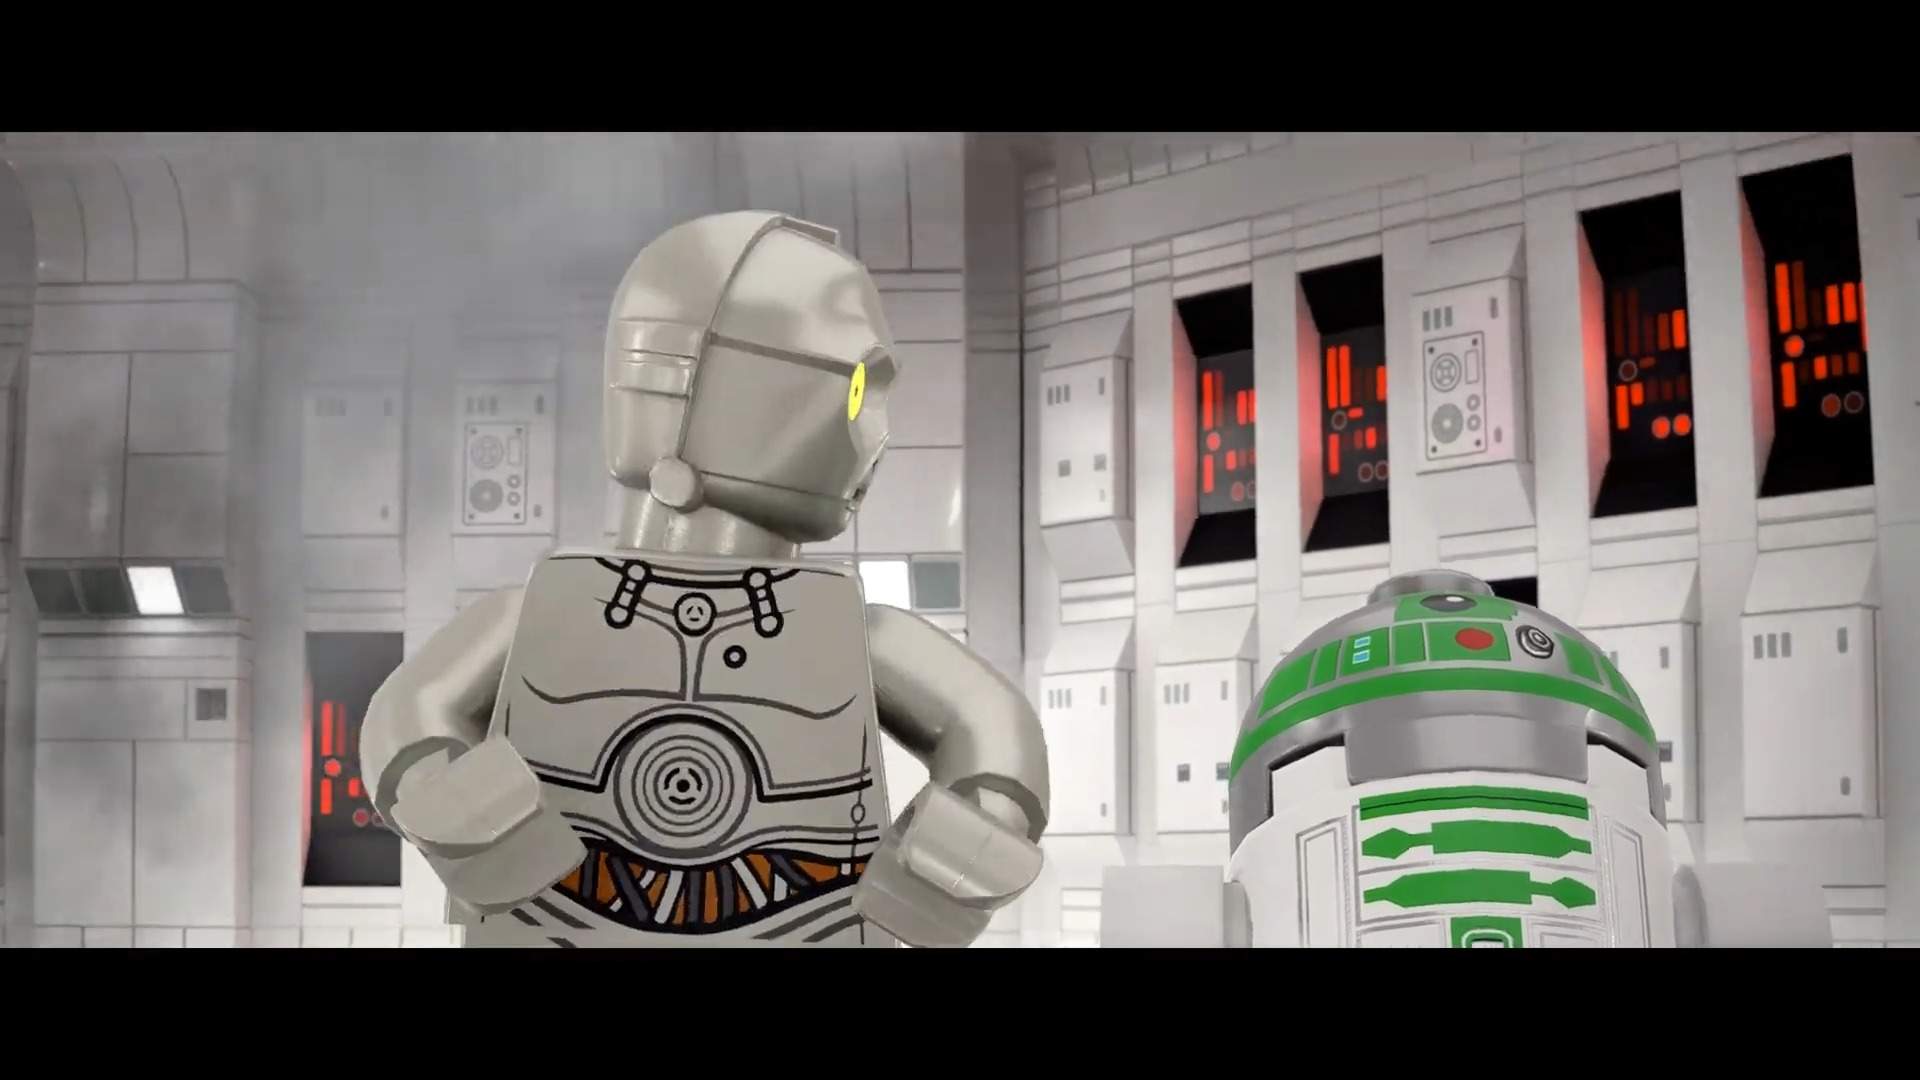 Confira aqui o que achamos de Lego Star Wars: A Ascensão Skywalker